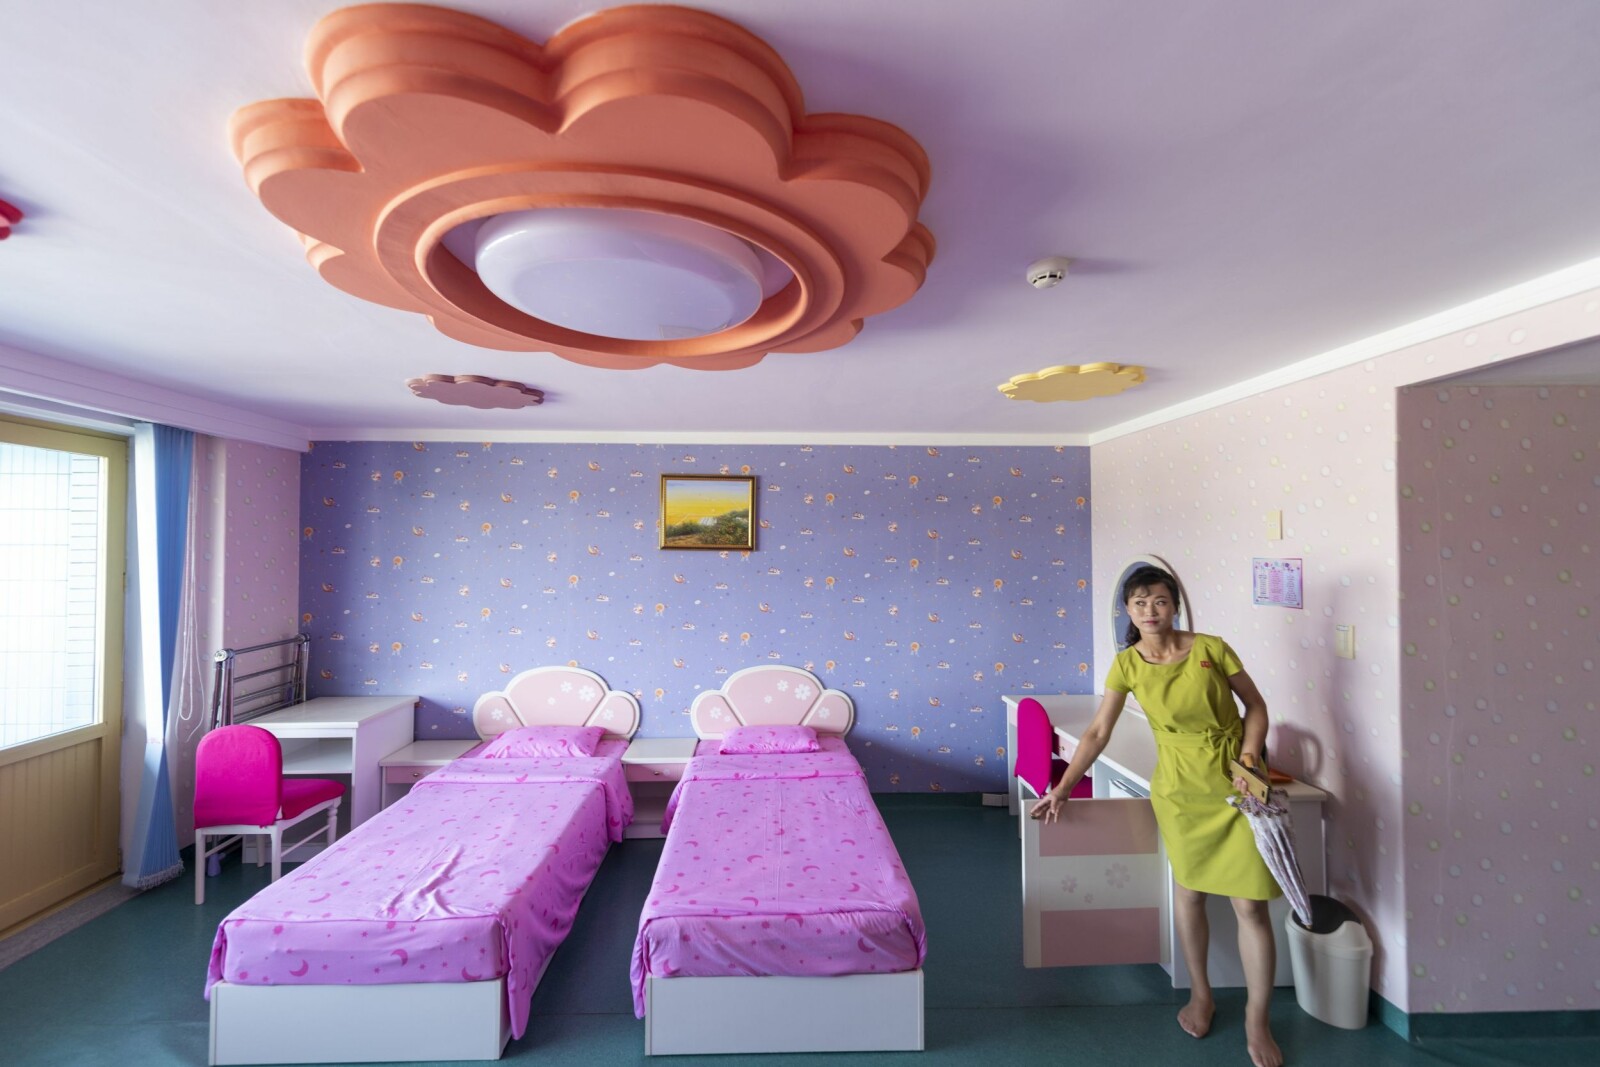 <b>GRØSS:</b> Fritt for ikke å våkne i dette rommet på sommerleirhotellet i Wonsan. En blanding av Disneyland og Stephen King.